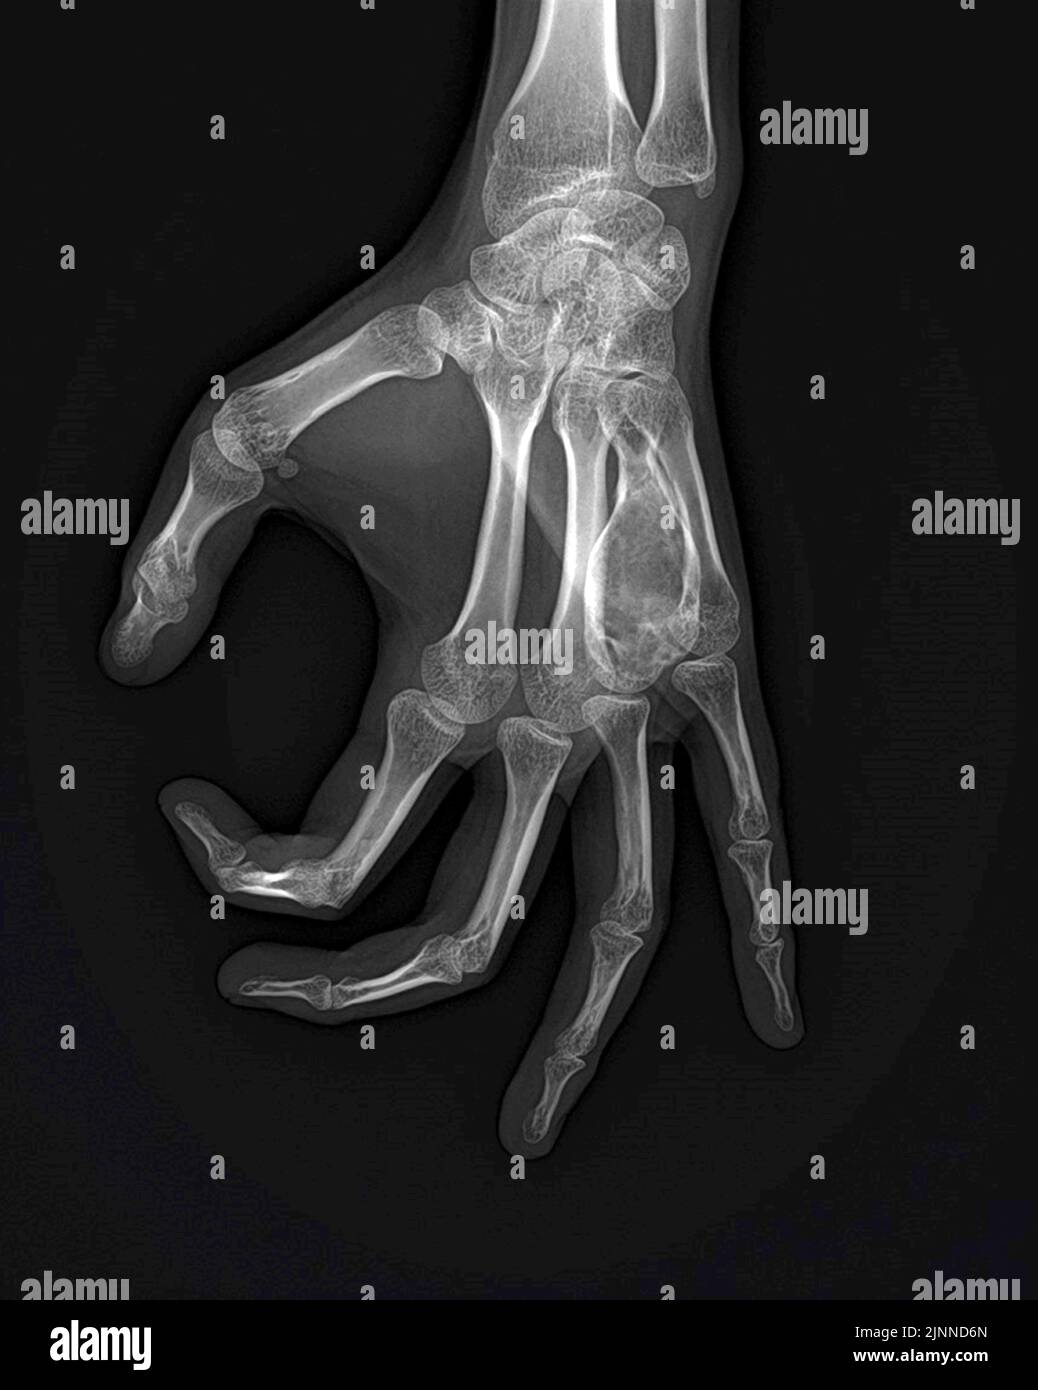 Cisti ossee aneurismiche della mano, raggi X. Foto Stock